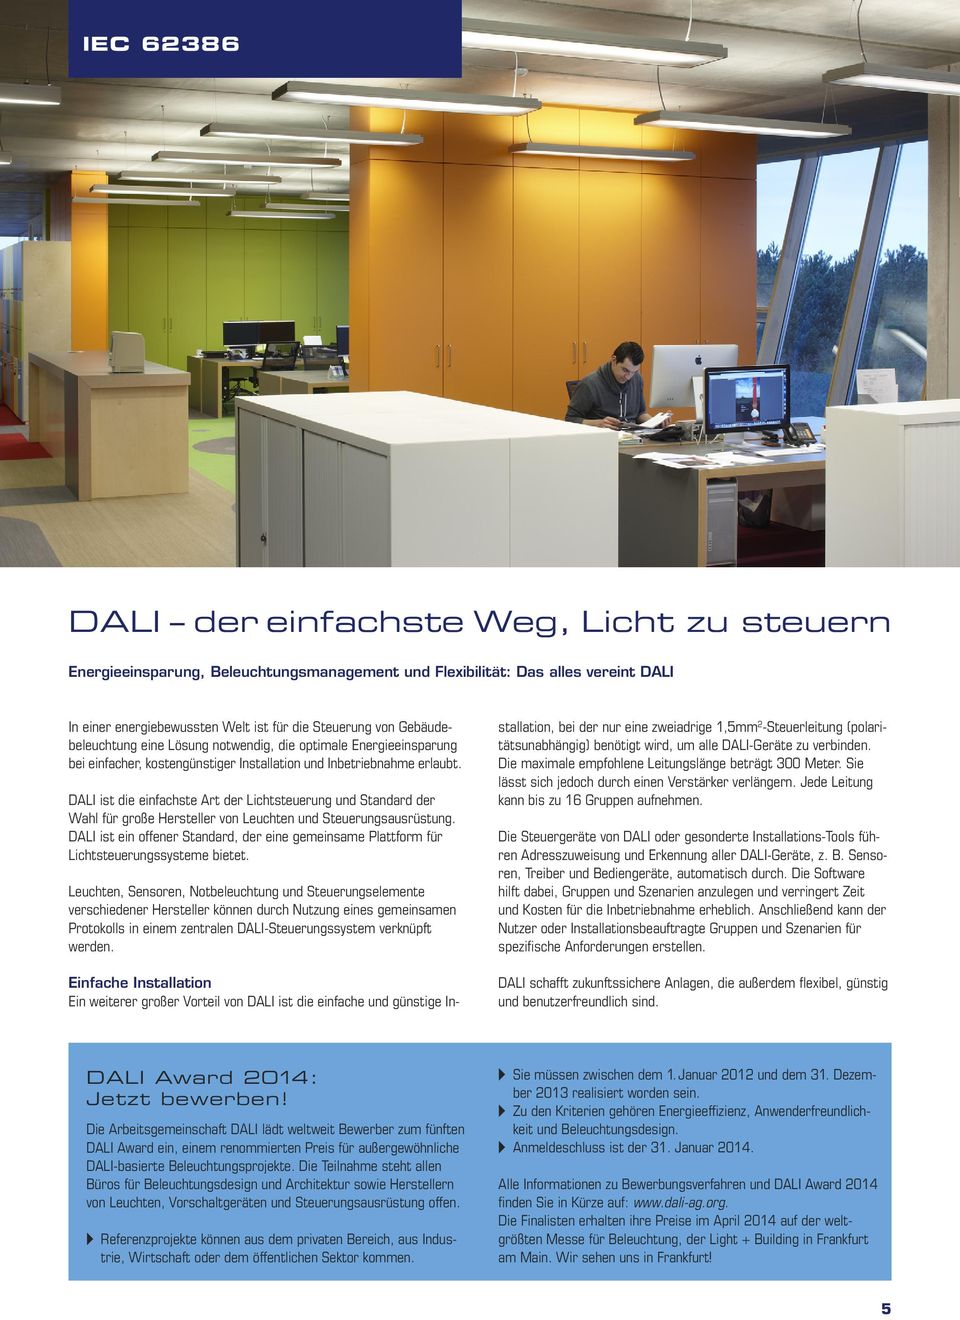 DALI ist die einfachste Art der Lichtsteuerung und Standard der Wahl für große Hersteller von Leuchten und Steuerungsausrüstung.